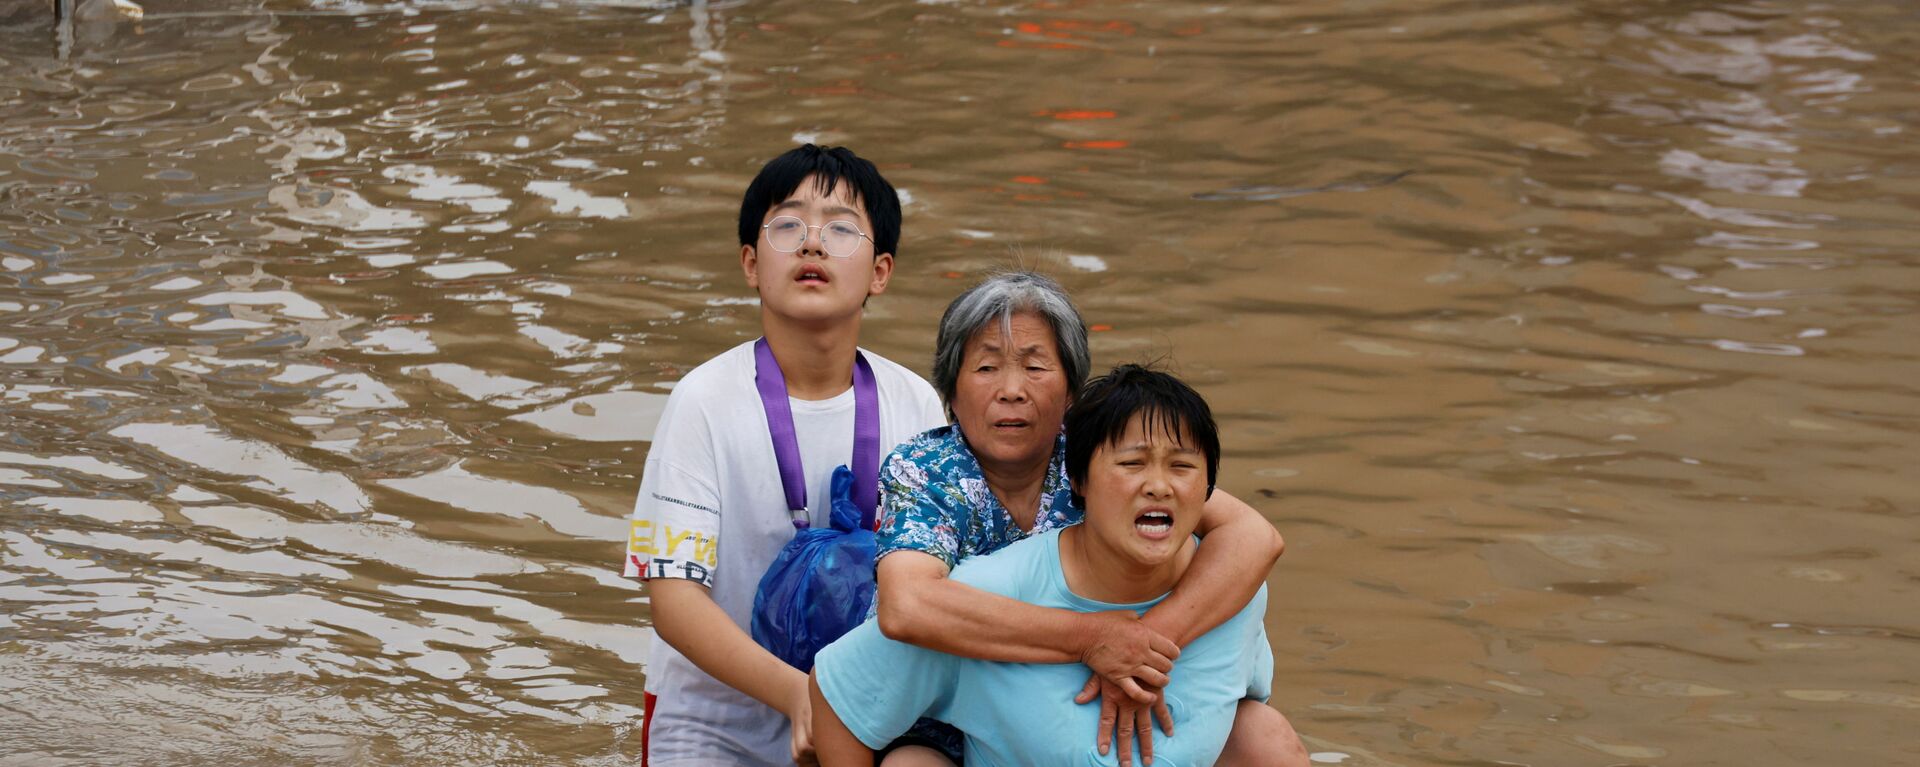 Женщина несет пожилую женщину  через паводковые воды после проливного дождя в Чжэнчжоу, провинция Хэнань, Китай - Sputnik Таджикистан, 1920, 26.07.2021